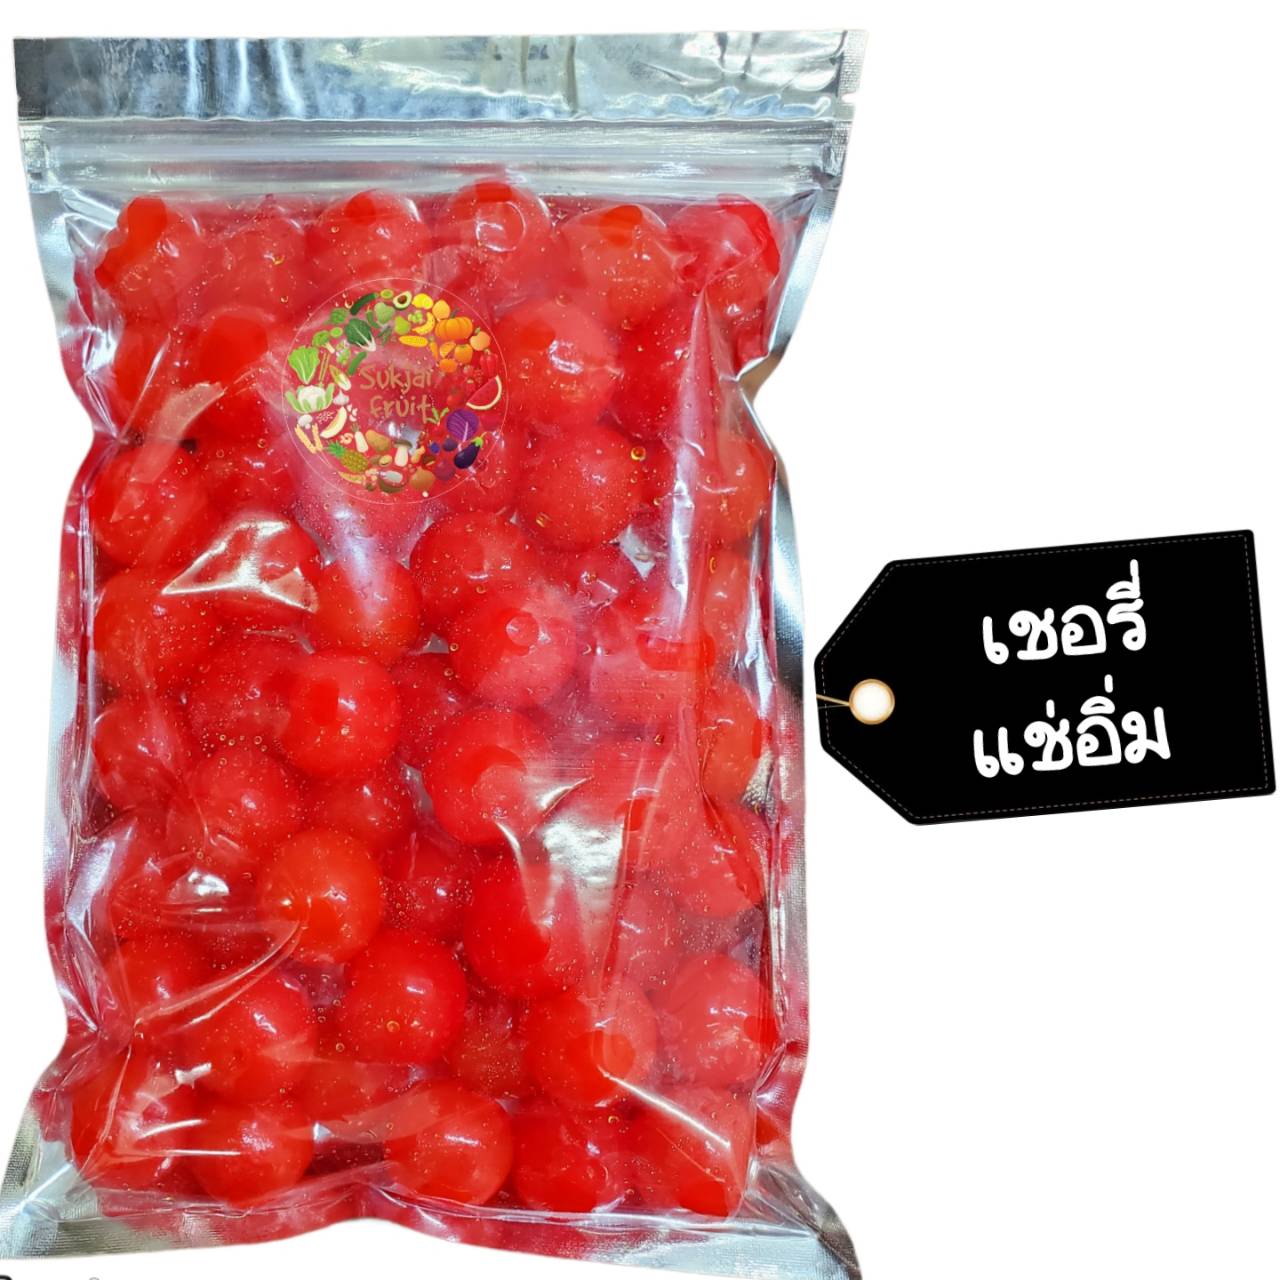 เชอรี่ แดง แช่อิ่ม 250 กรัม - Crystallized red cherry 250 g  - Dried fruit ผลไม้ อบแห้ง ขนมไทย ขนม OTOP บ๊วย ผลไม้อบแห้ง บ๊วย ผลไม้อบแห้ง